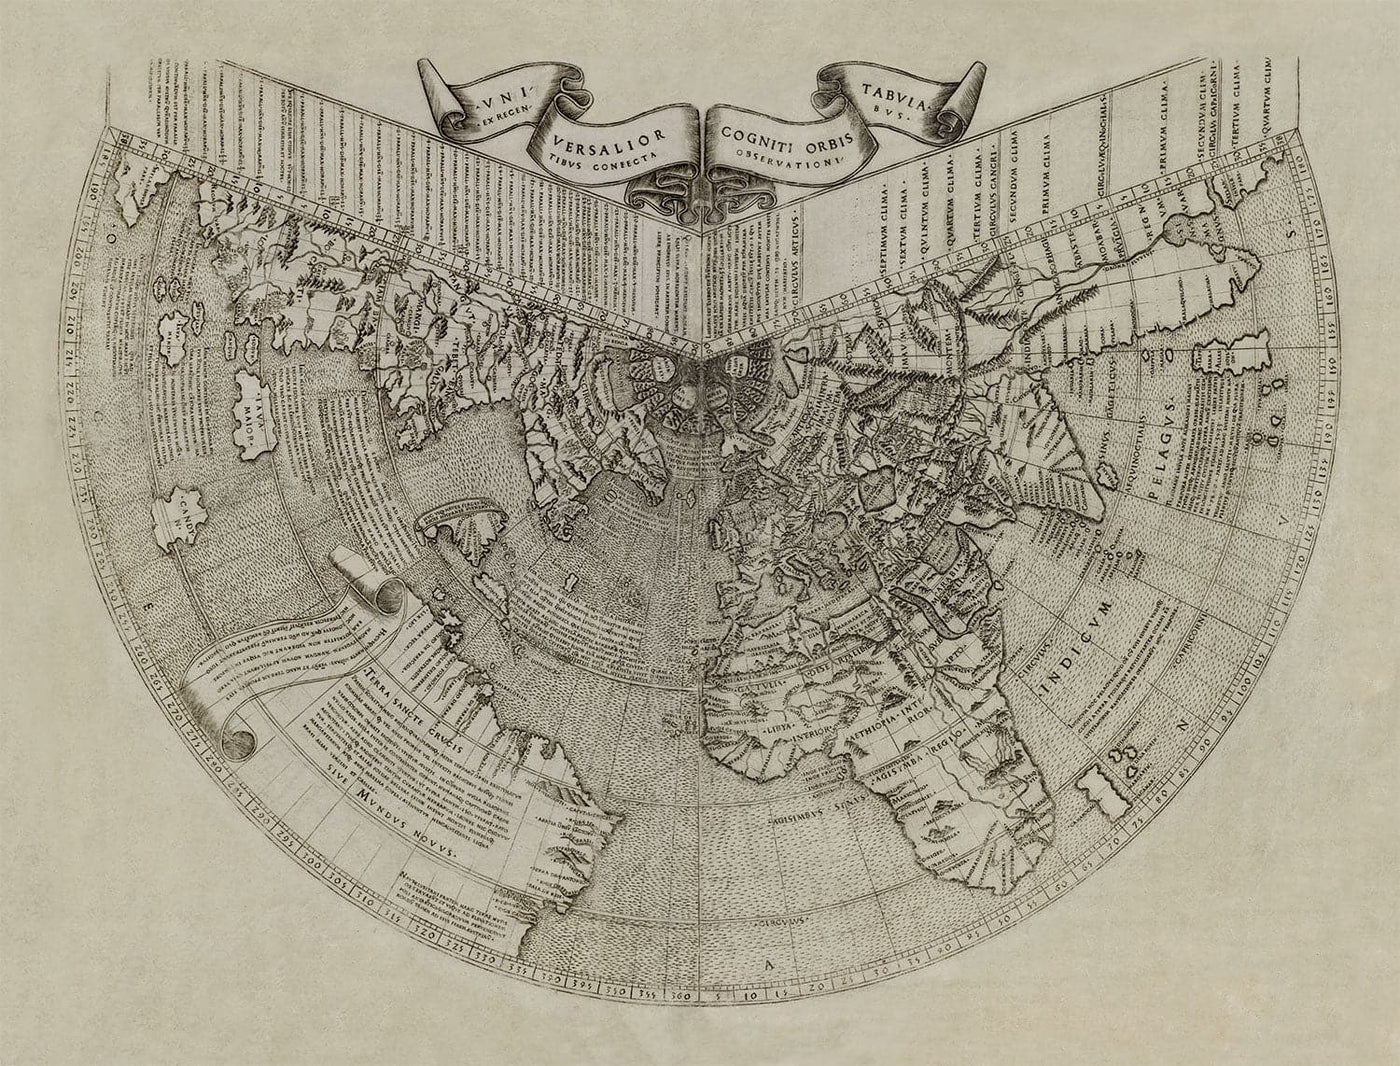 Old World Atlas Karte, 1507 von Johannes Ruysch - Konische Karte - selten und historisch